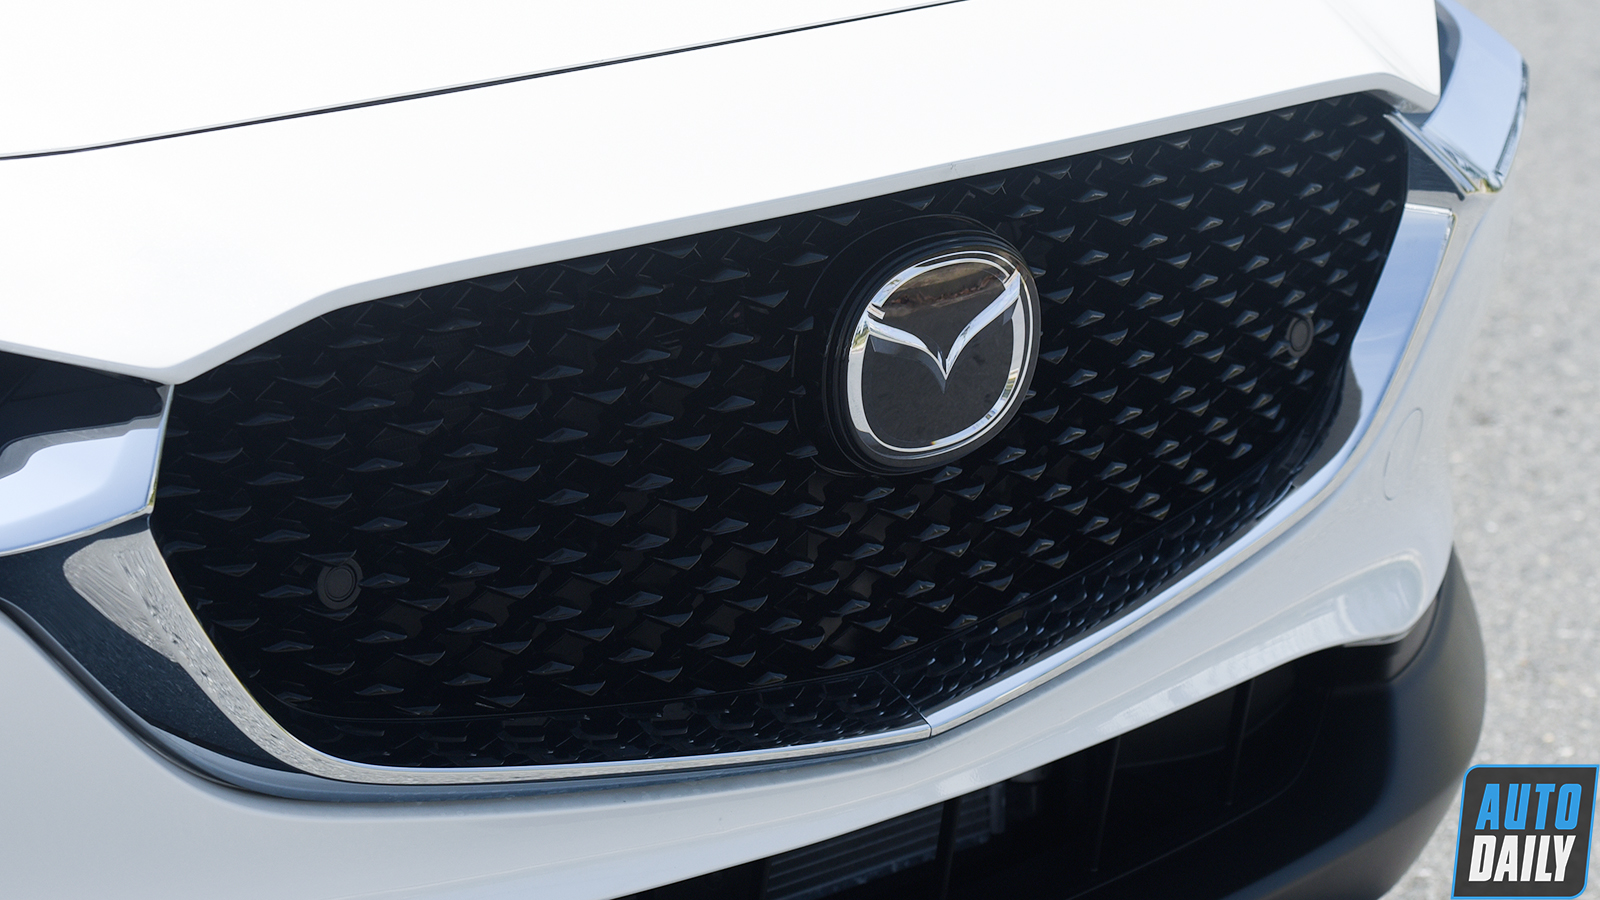 Hình ảnh chi tiết 2 phiên bản Mazda CX-30 vừa ra mắt tại Việt Nam adt-9961-copy.jpg